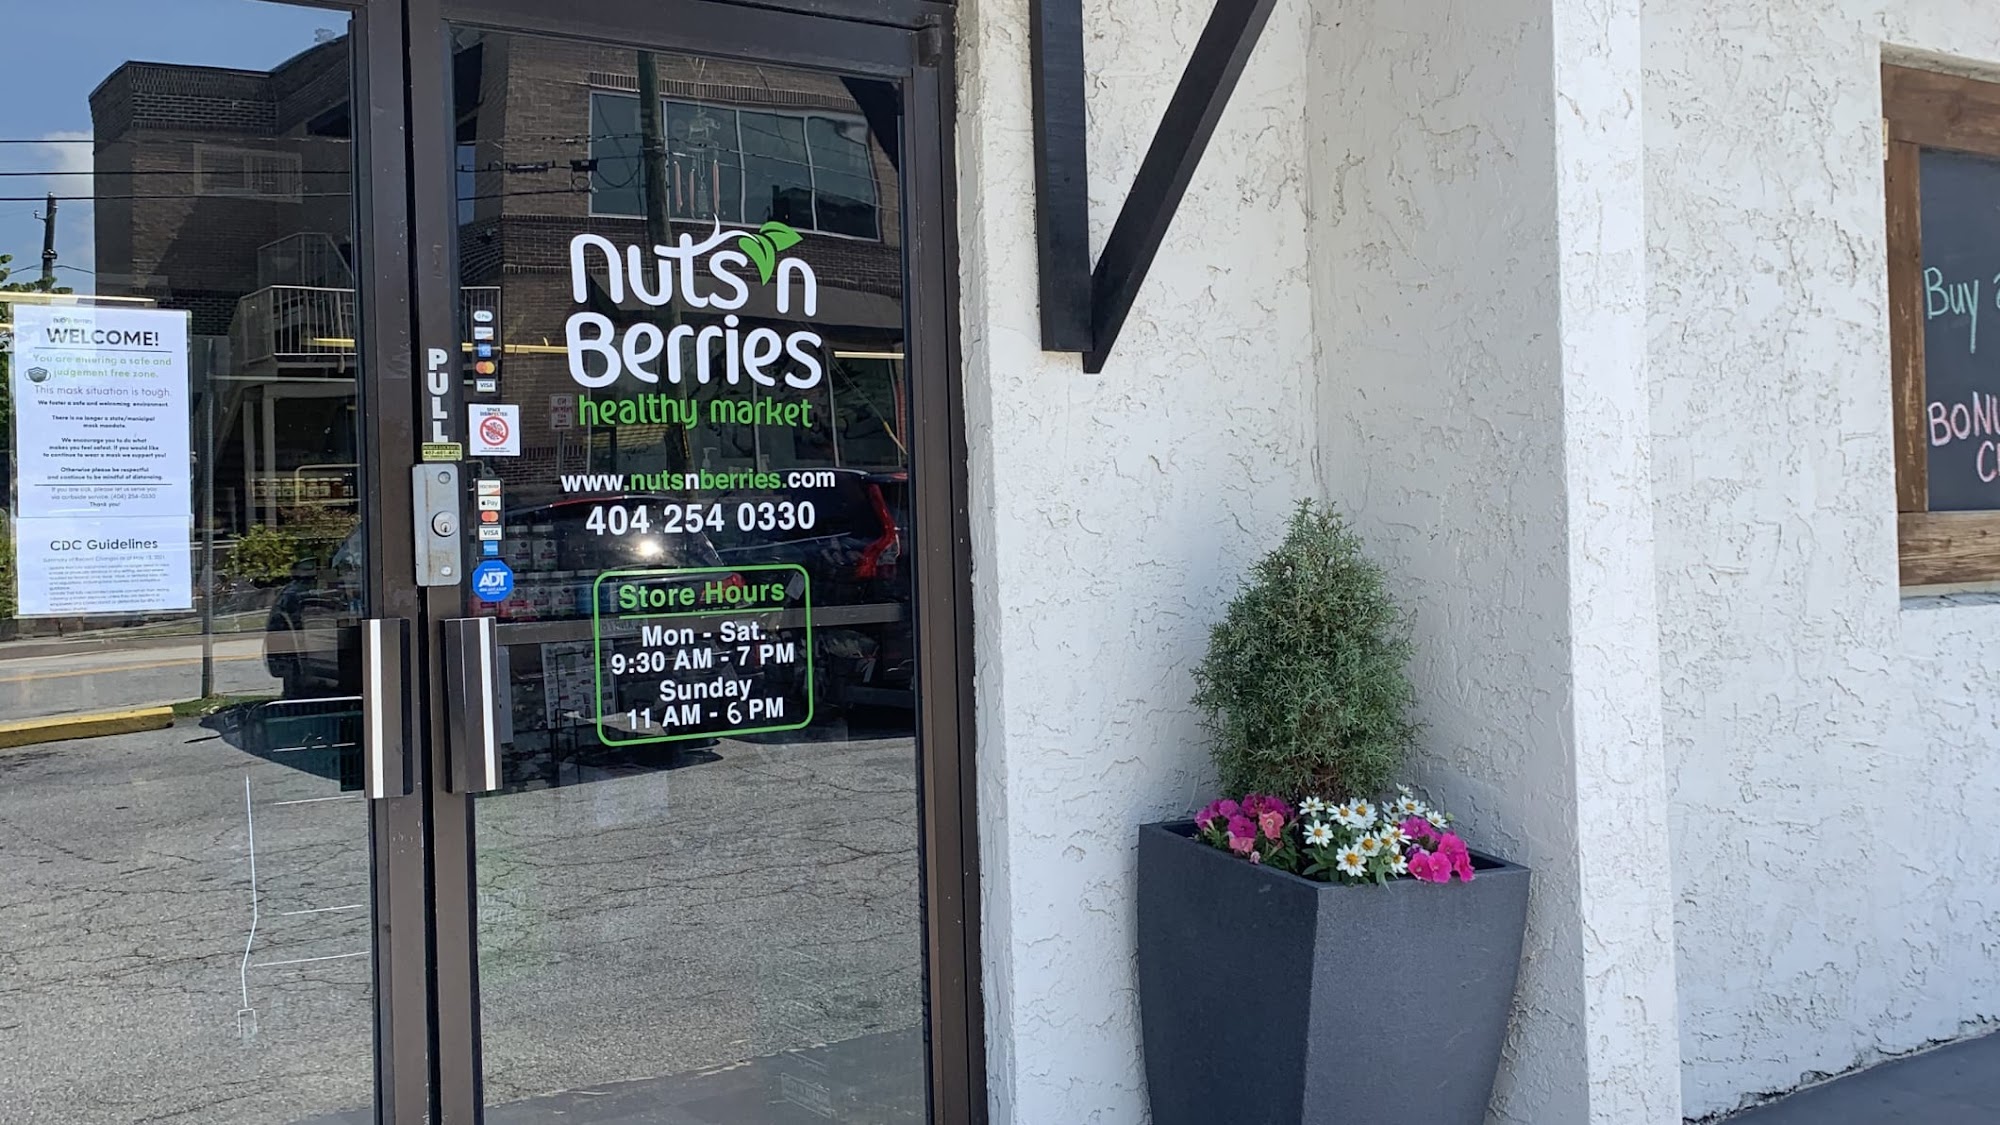 Nuts 'n Berries